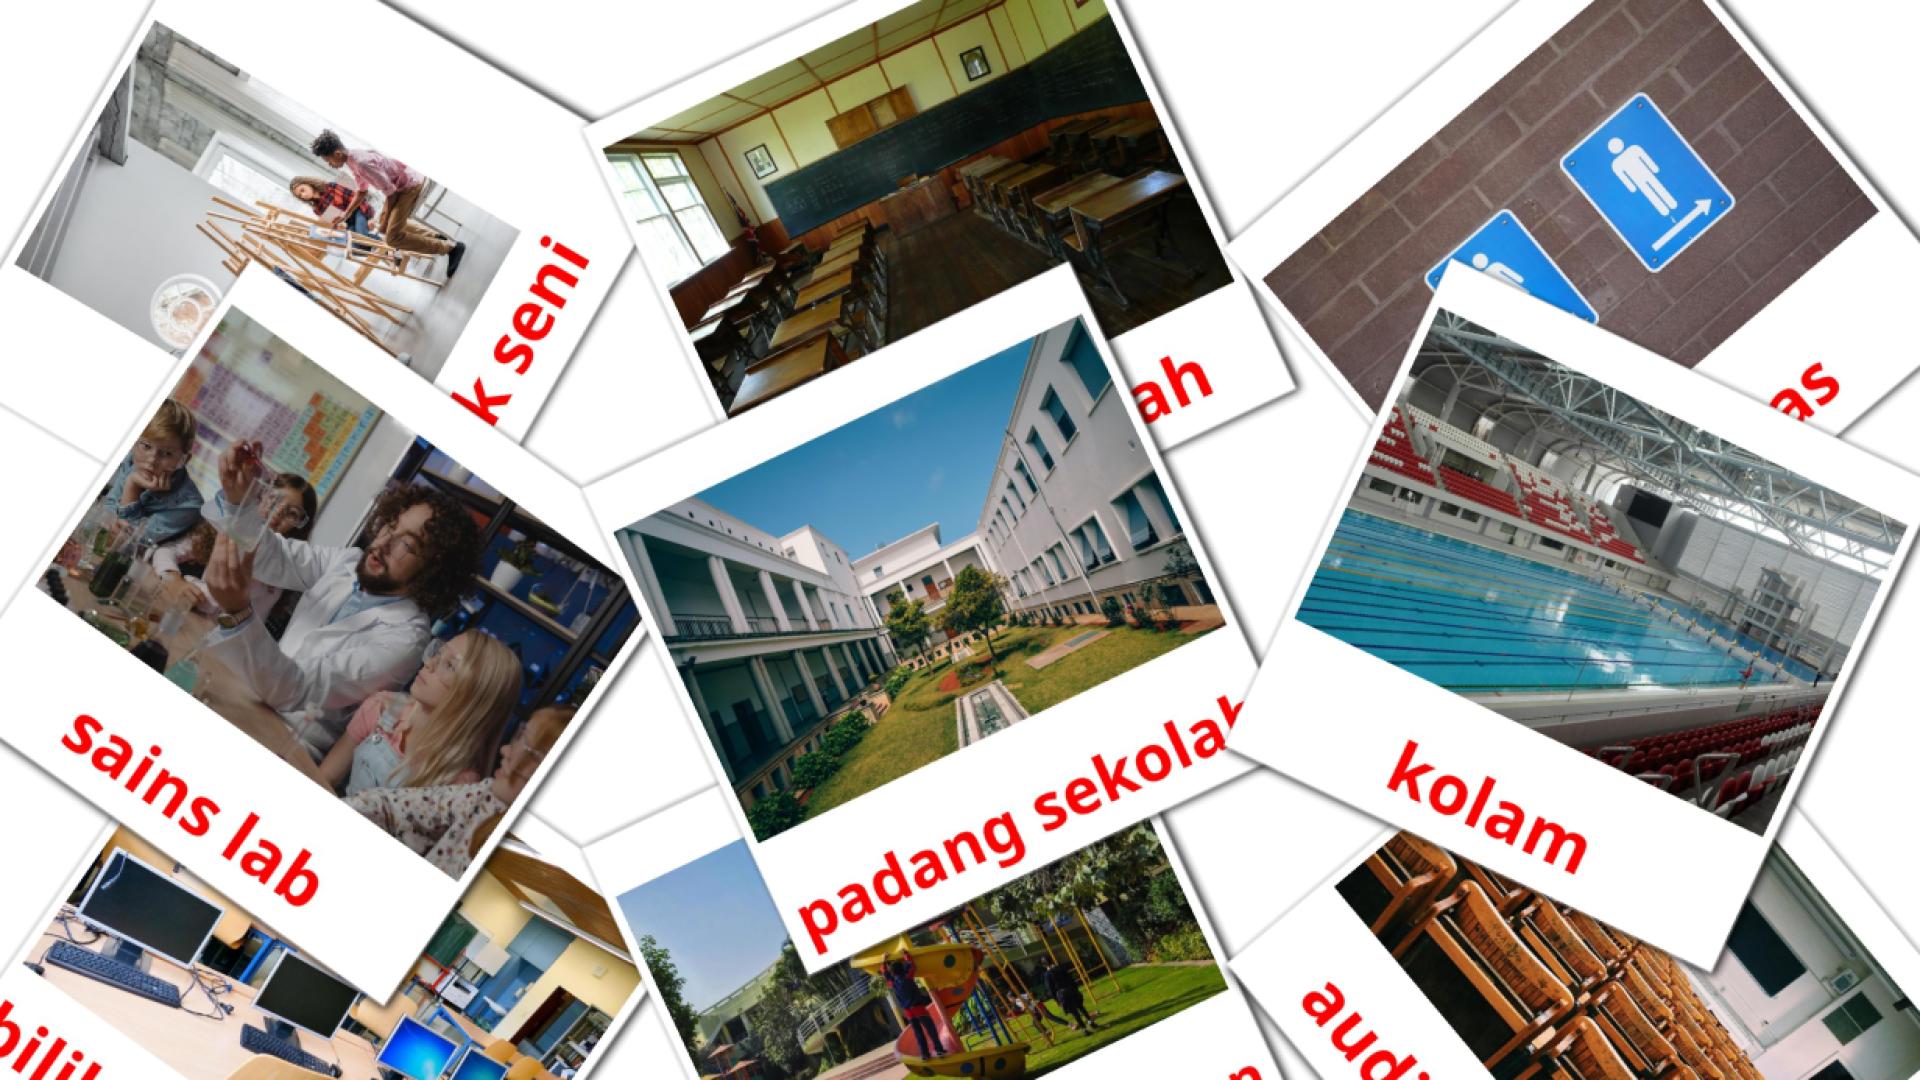 17 Bildkarten für Bangunan Sekolah